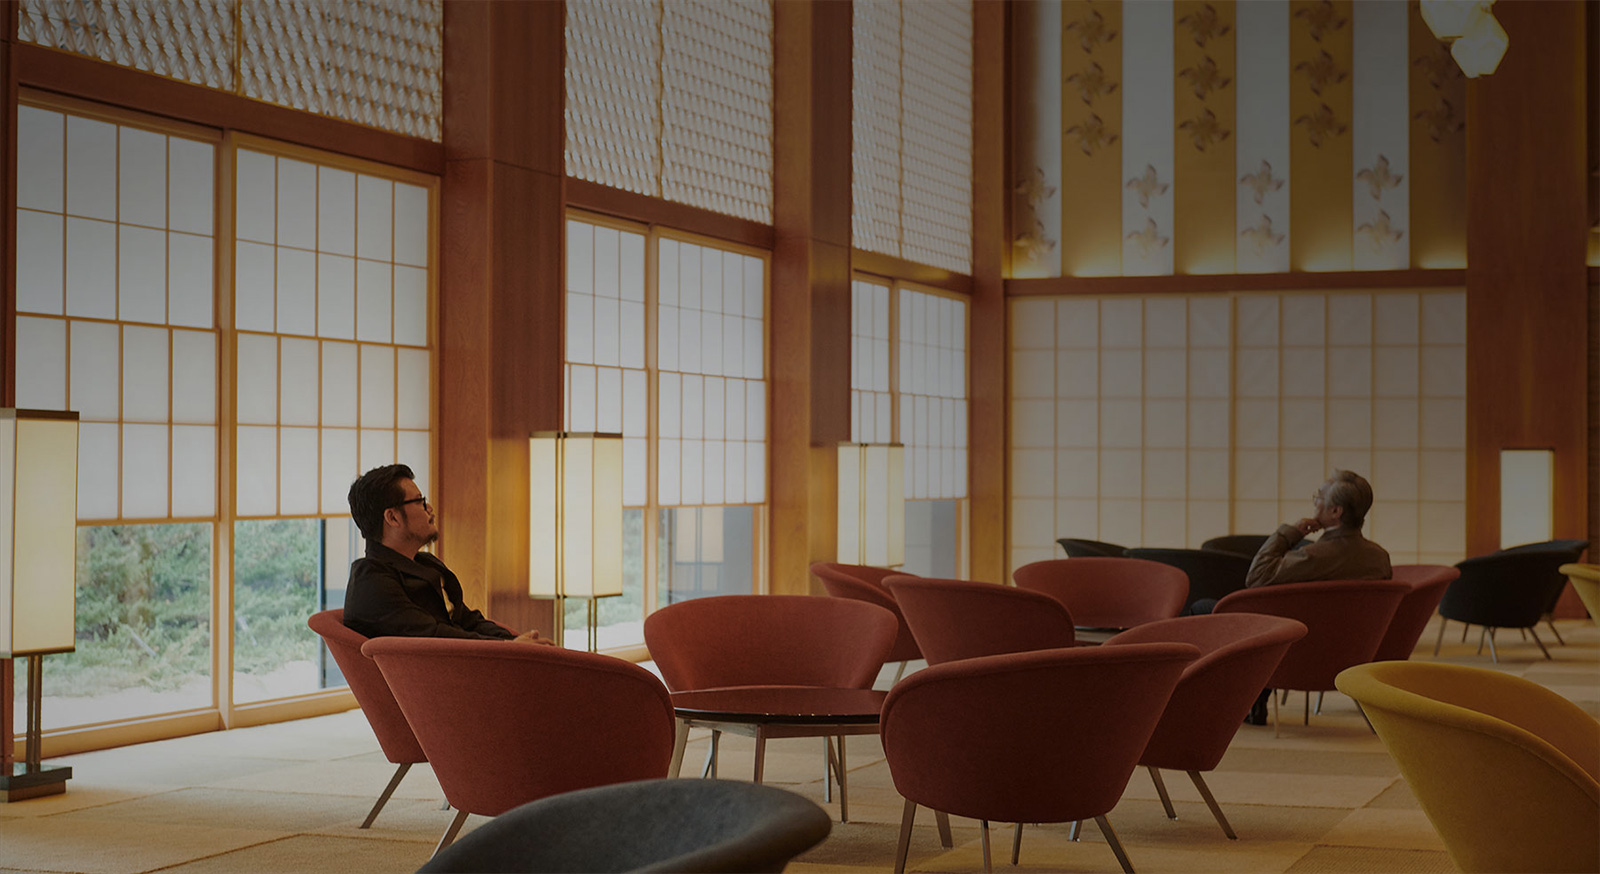 Hotel Okura Tokyo revives a lost midcentury icon in Japan